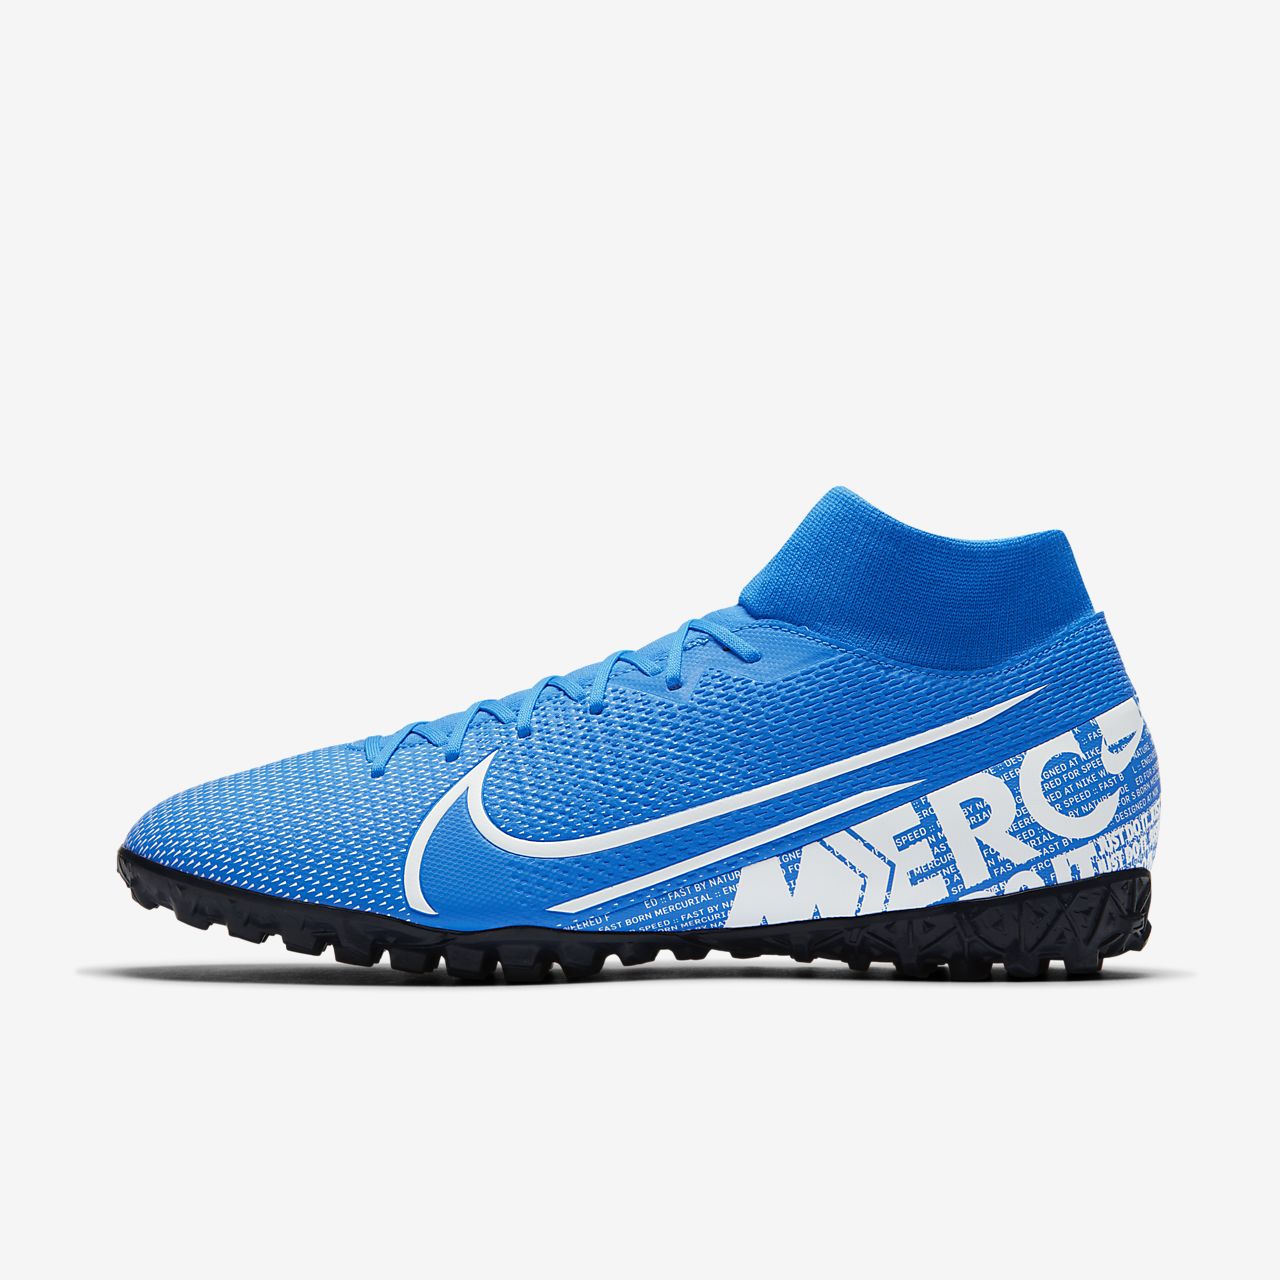 Nike mercurial superfly 6 club df mg voetbalschoenen wit